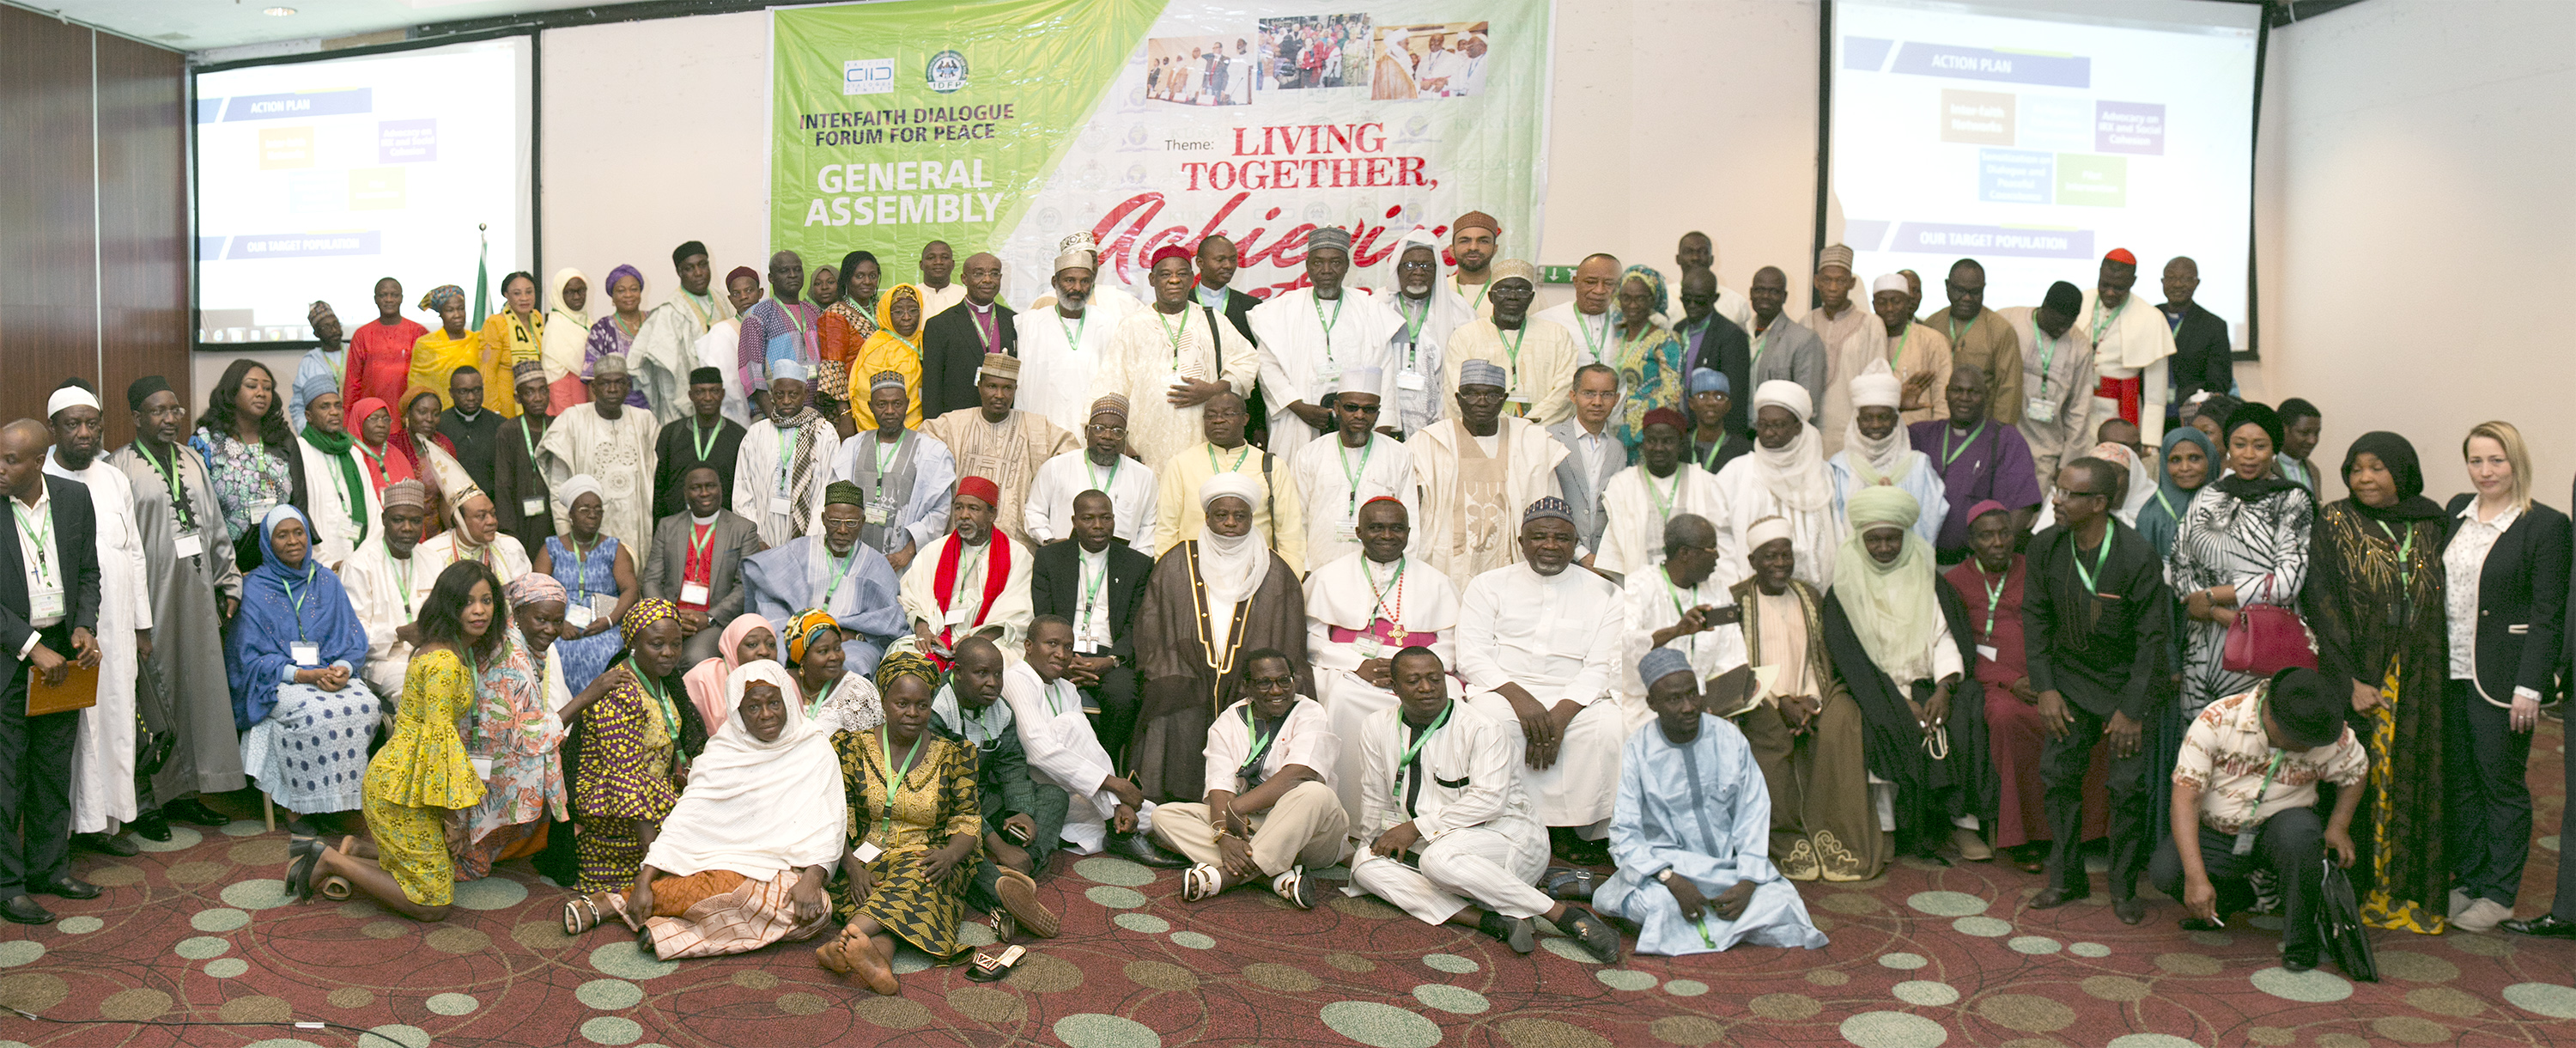 Paz y reconciliación a través del diálogo interreligioso en Nigeria